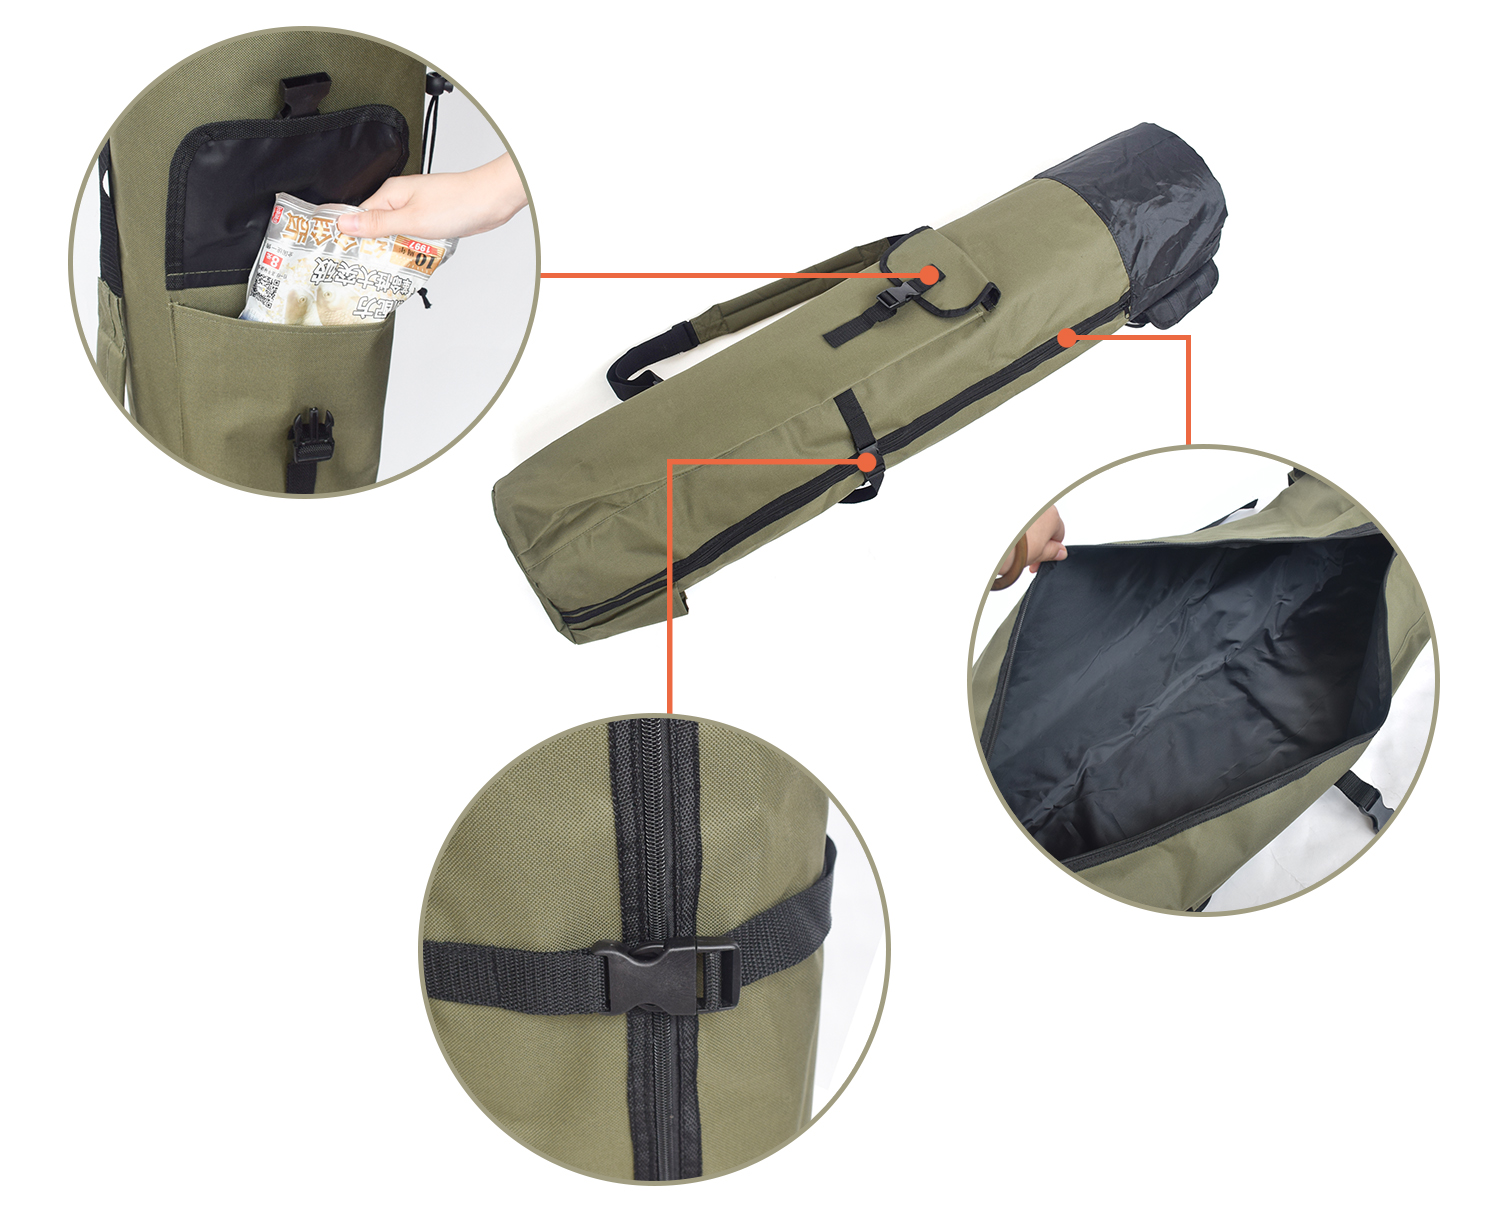 Détails du sac pour canne à pêche MSDFR-11